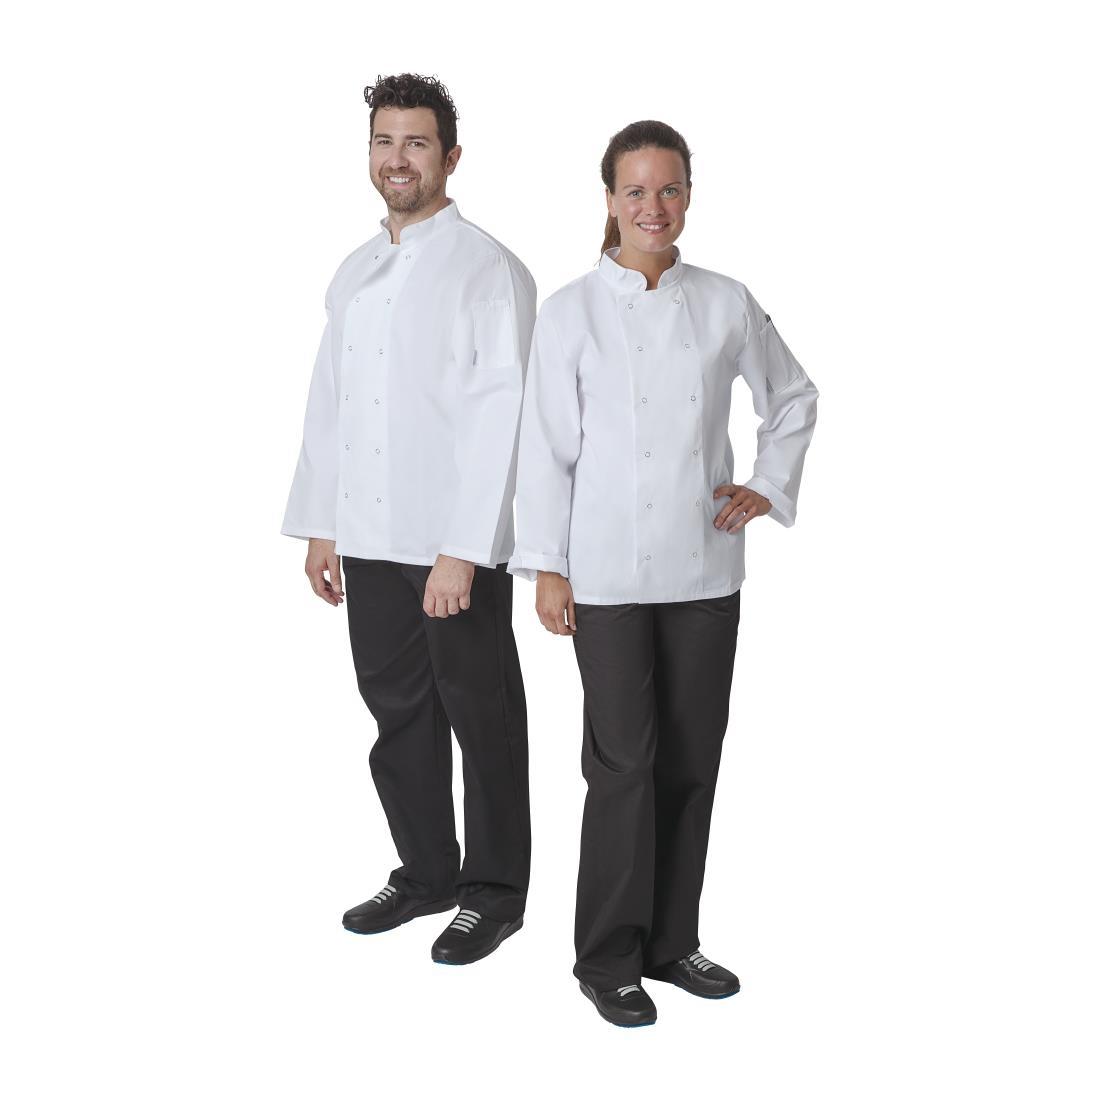 Whites Vegas Unisex Chefs Jacket Long Sleeve White XS - A134-XS  - 3